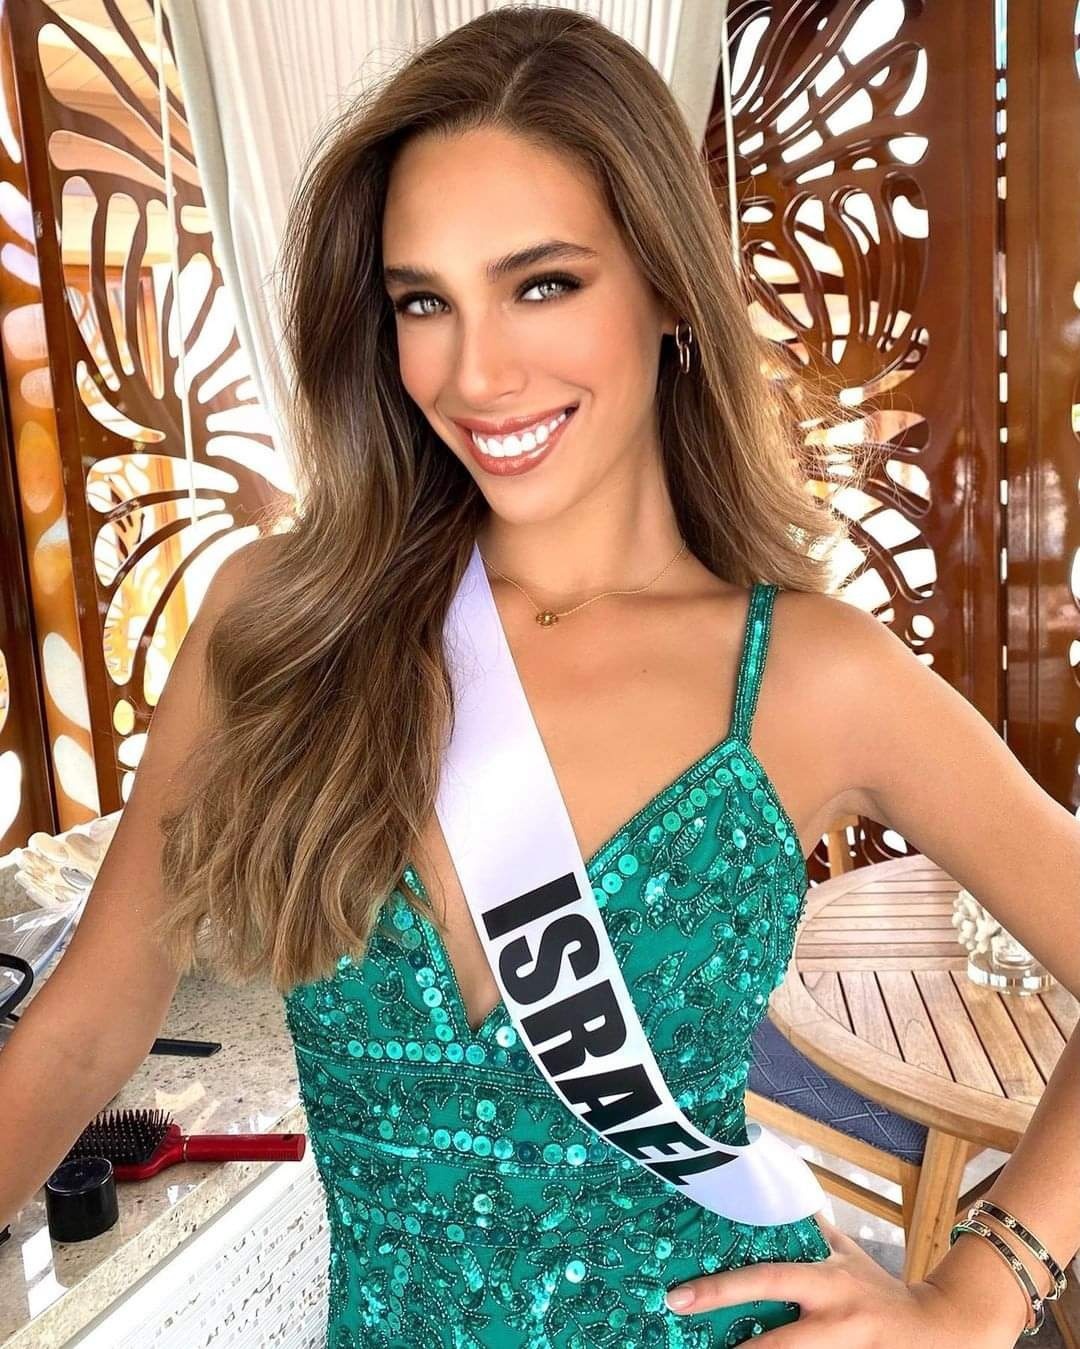 Đại diện Israel bỏ ngang vòng thi bán kết Hoa hậu Hoàn vũ